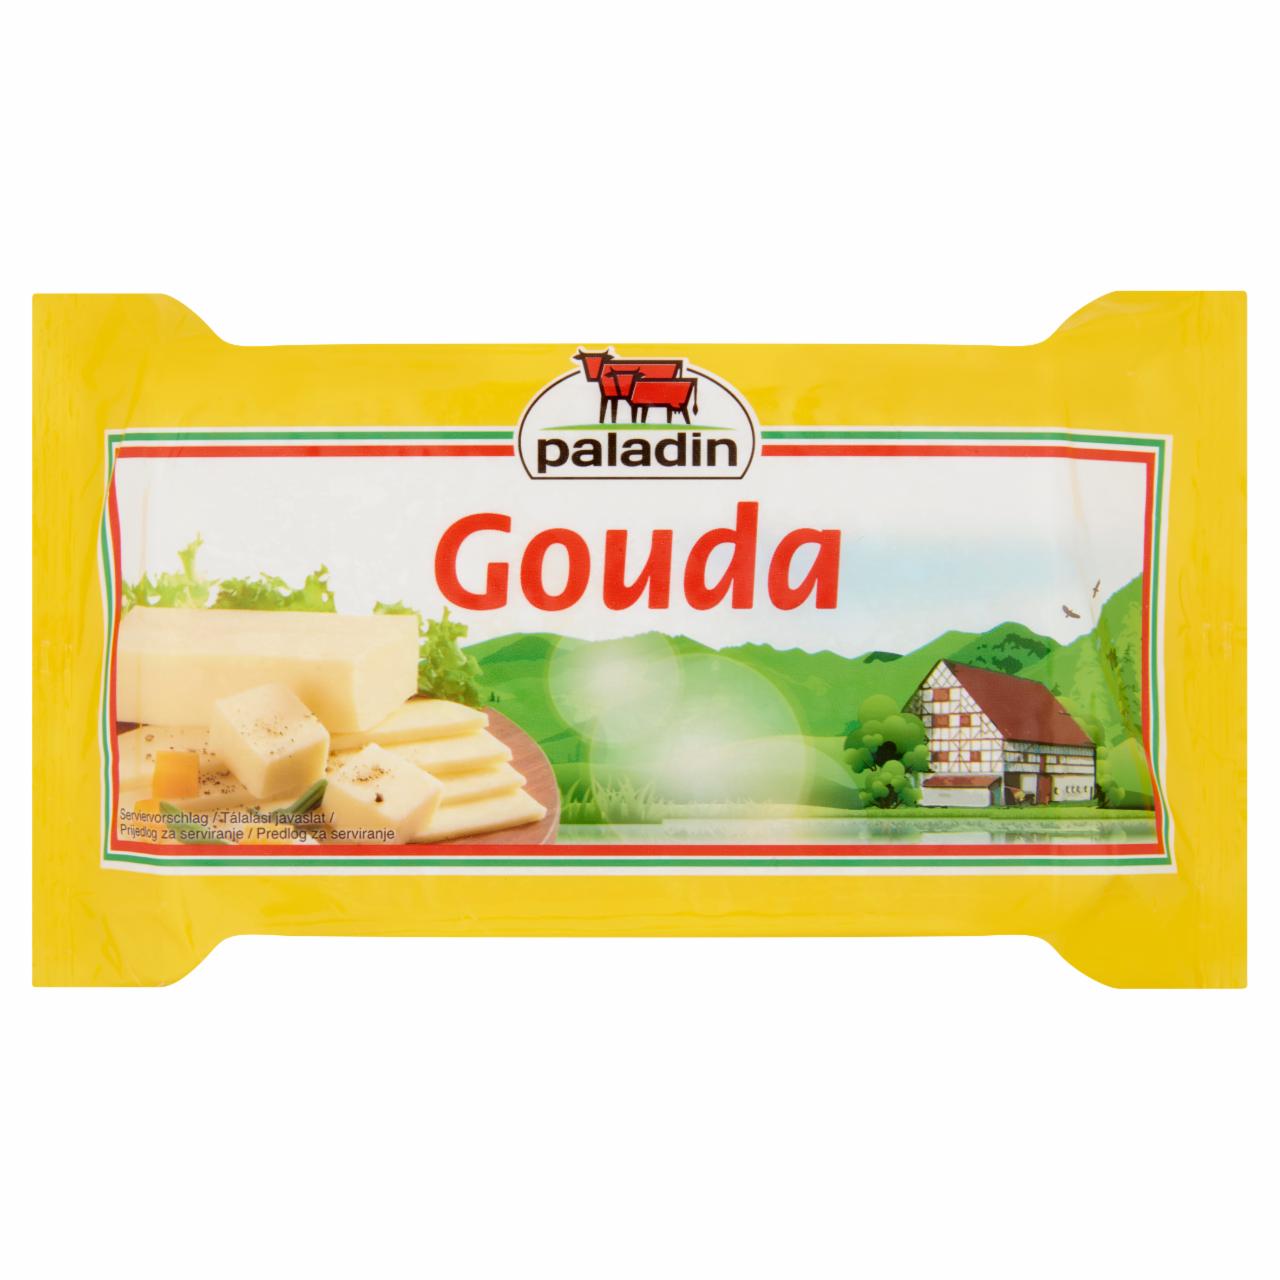 Képek - Paladin gouda félkemény, zsíros sajt 400 g